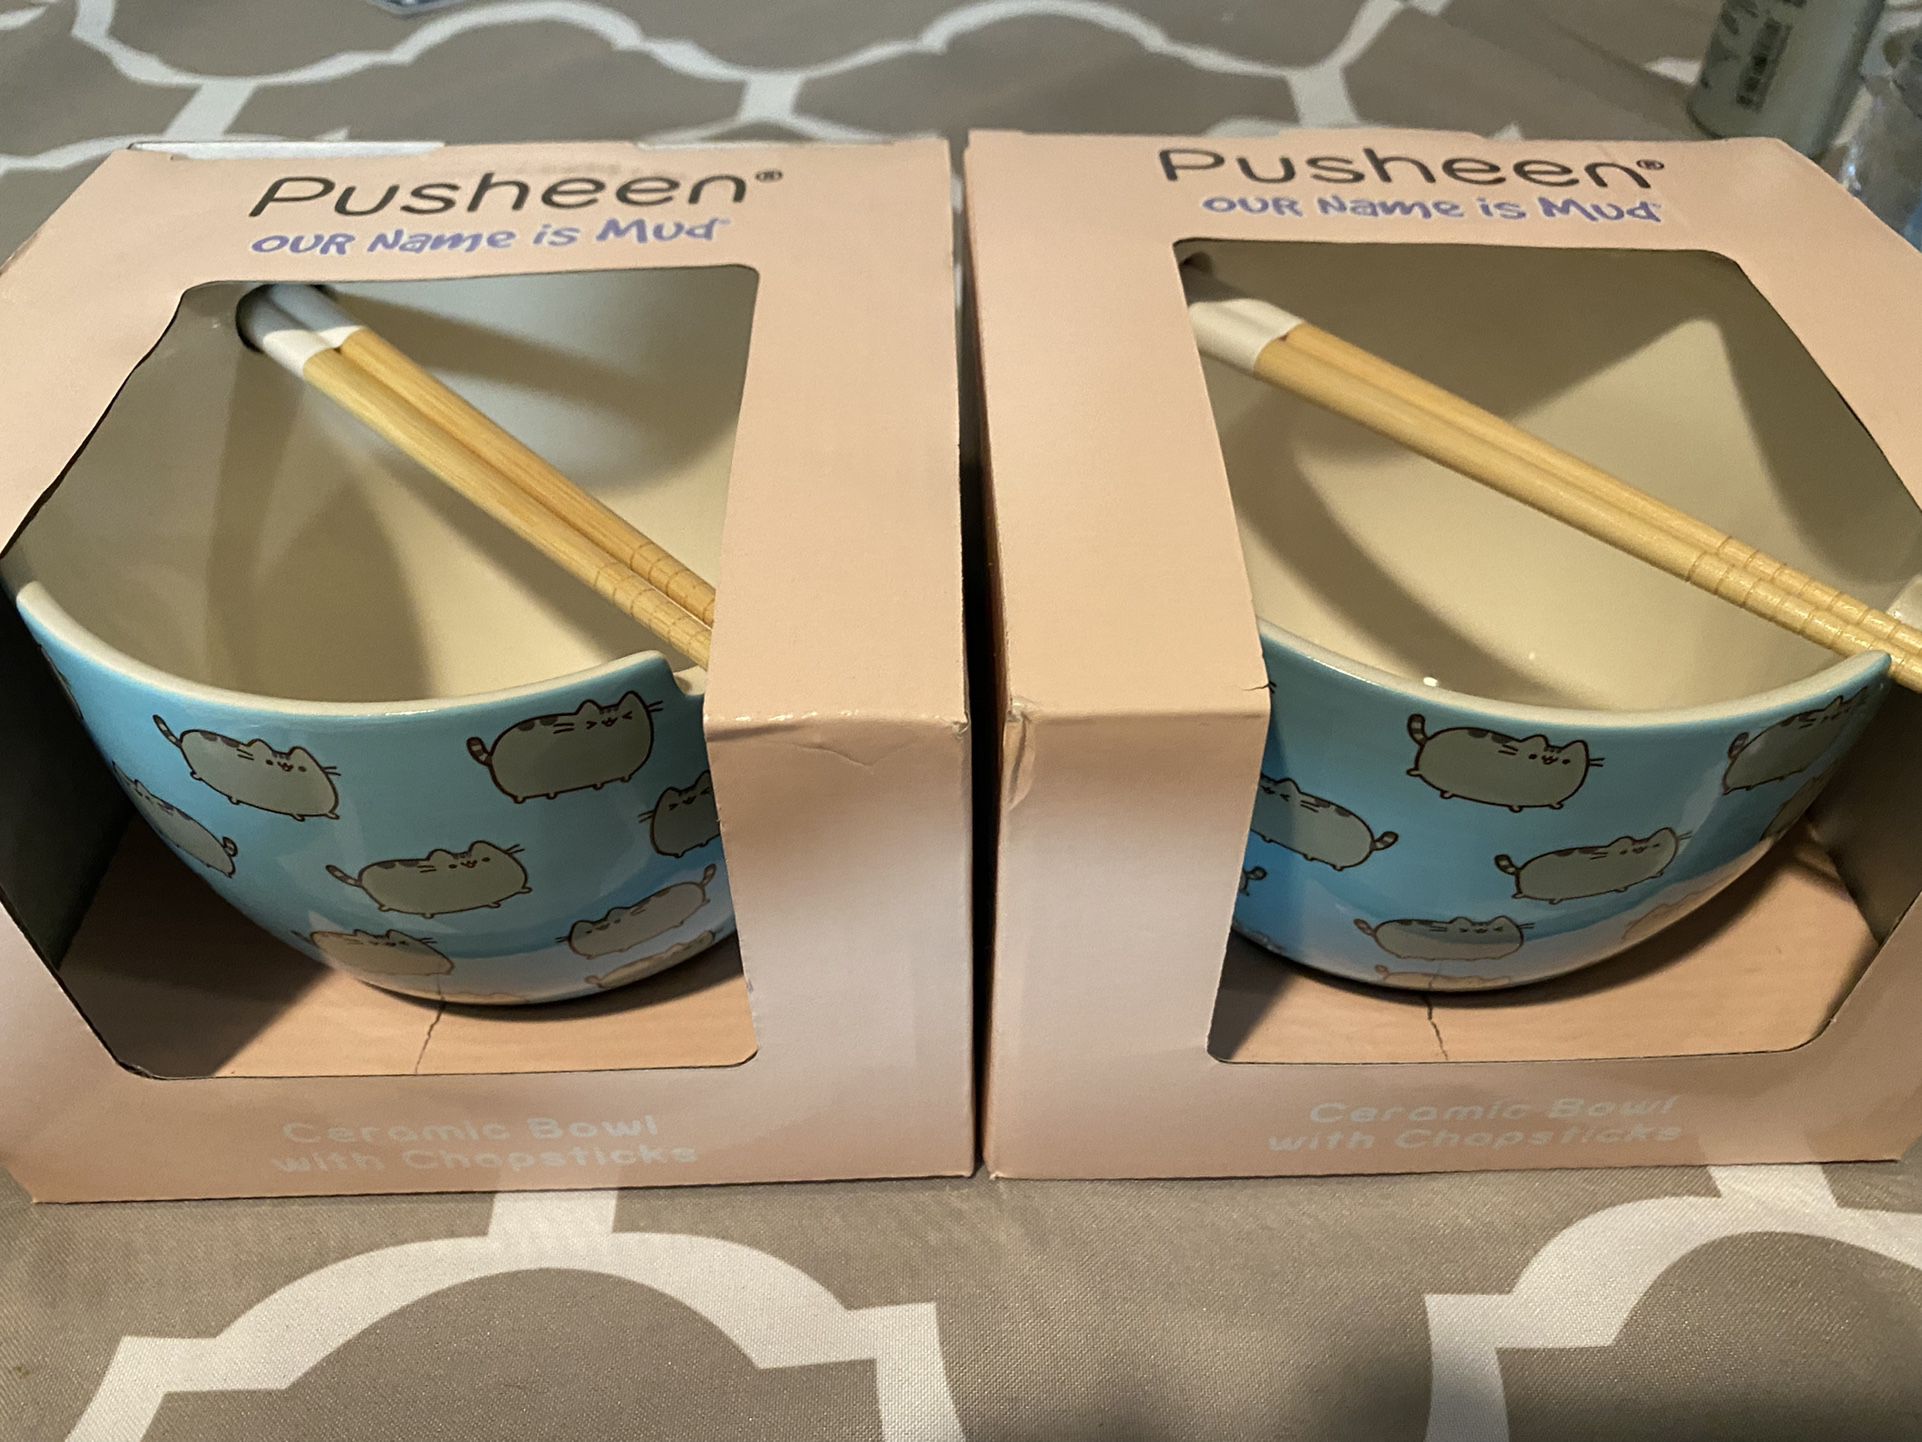 Pusheen Cerami Bowl w/chopsticks and Sushi Set